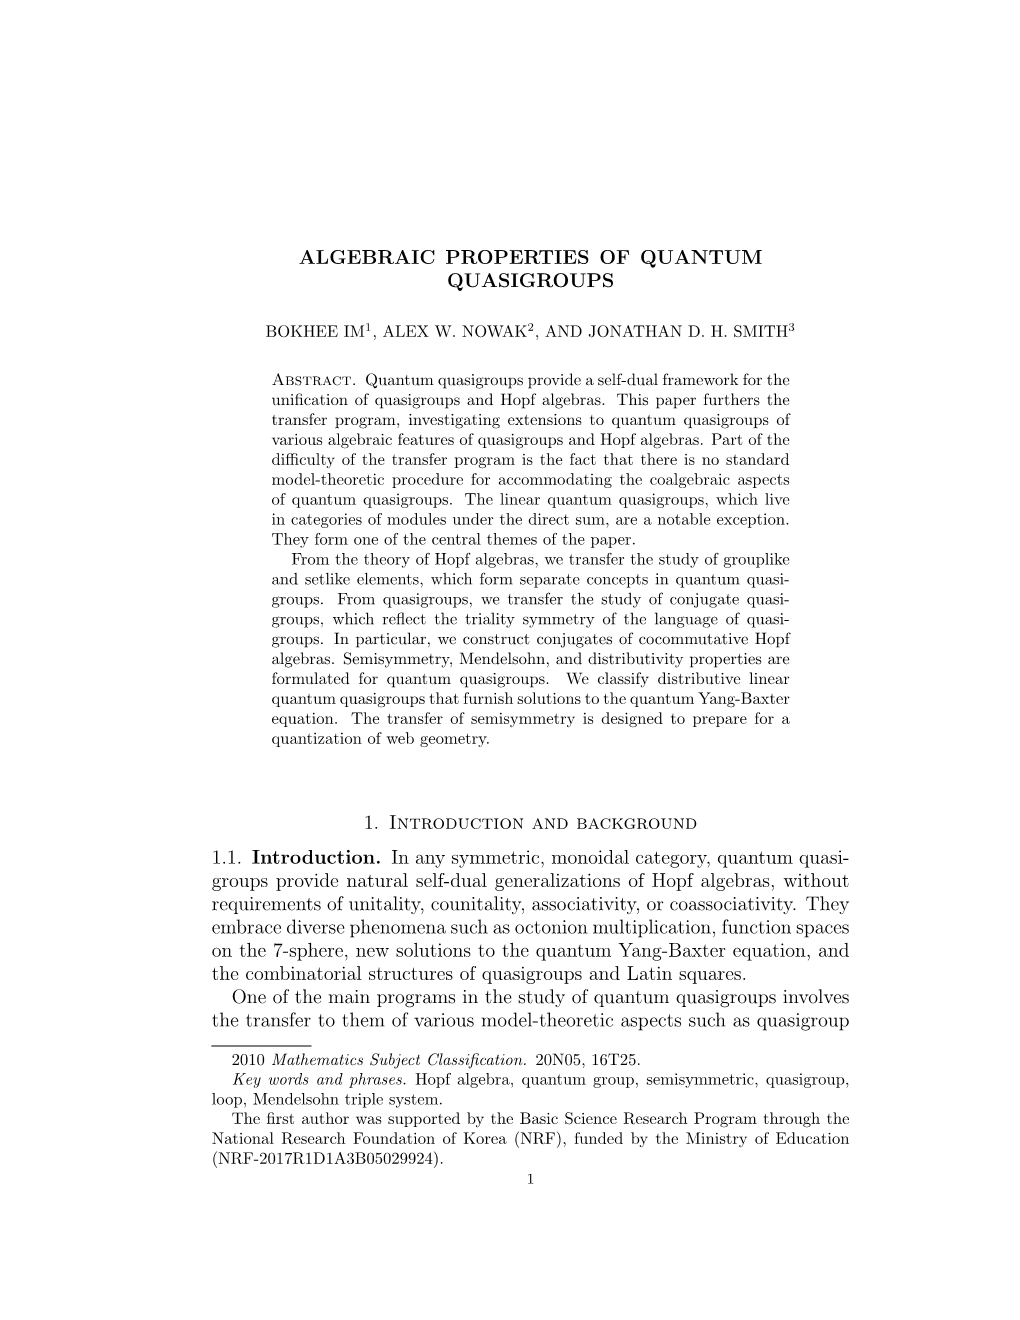 Algebraic Properties of Quantum Quasigroups 1